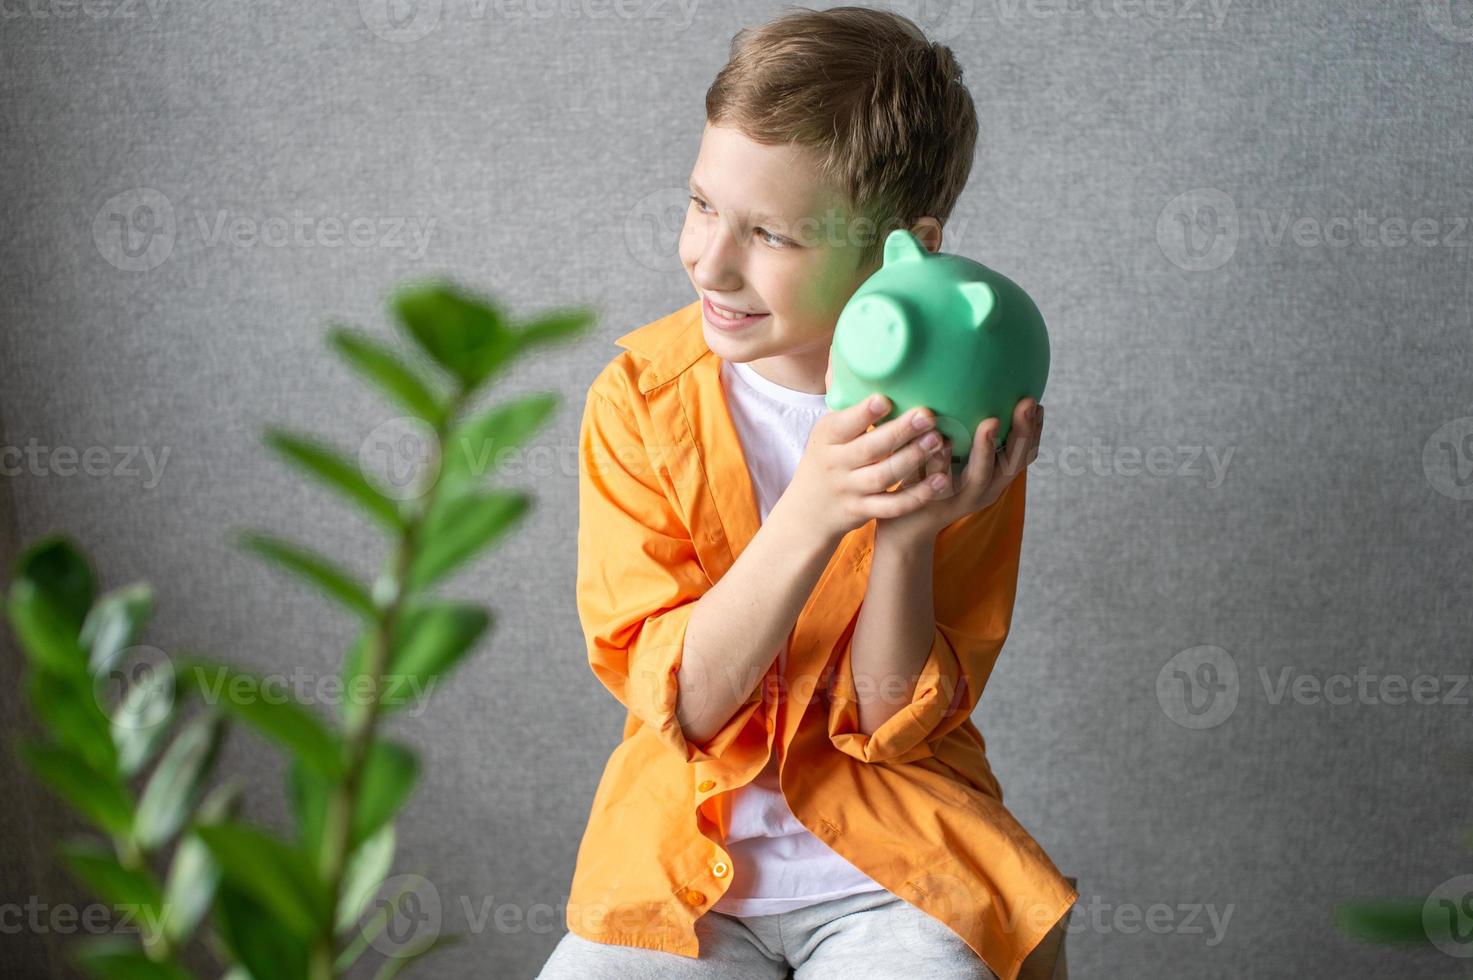 un linda chico en un camisa batidos un cerdito banco y escucha a el tintinamente de monedas foto